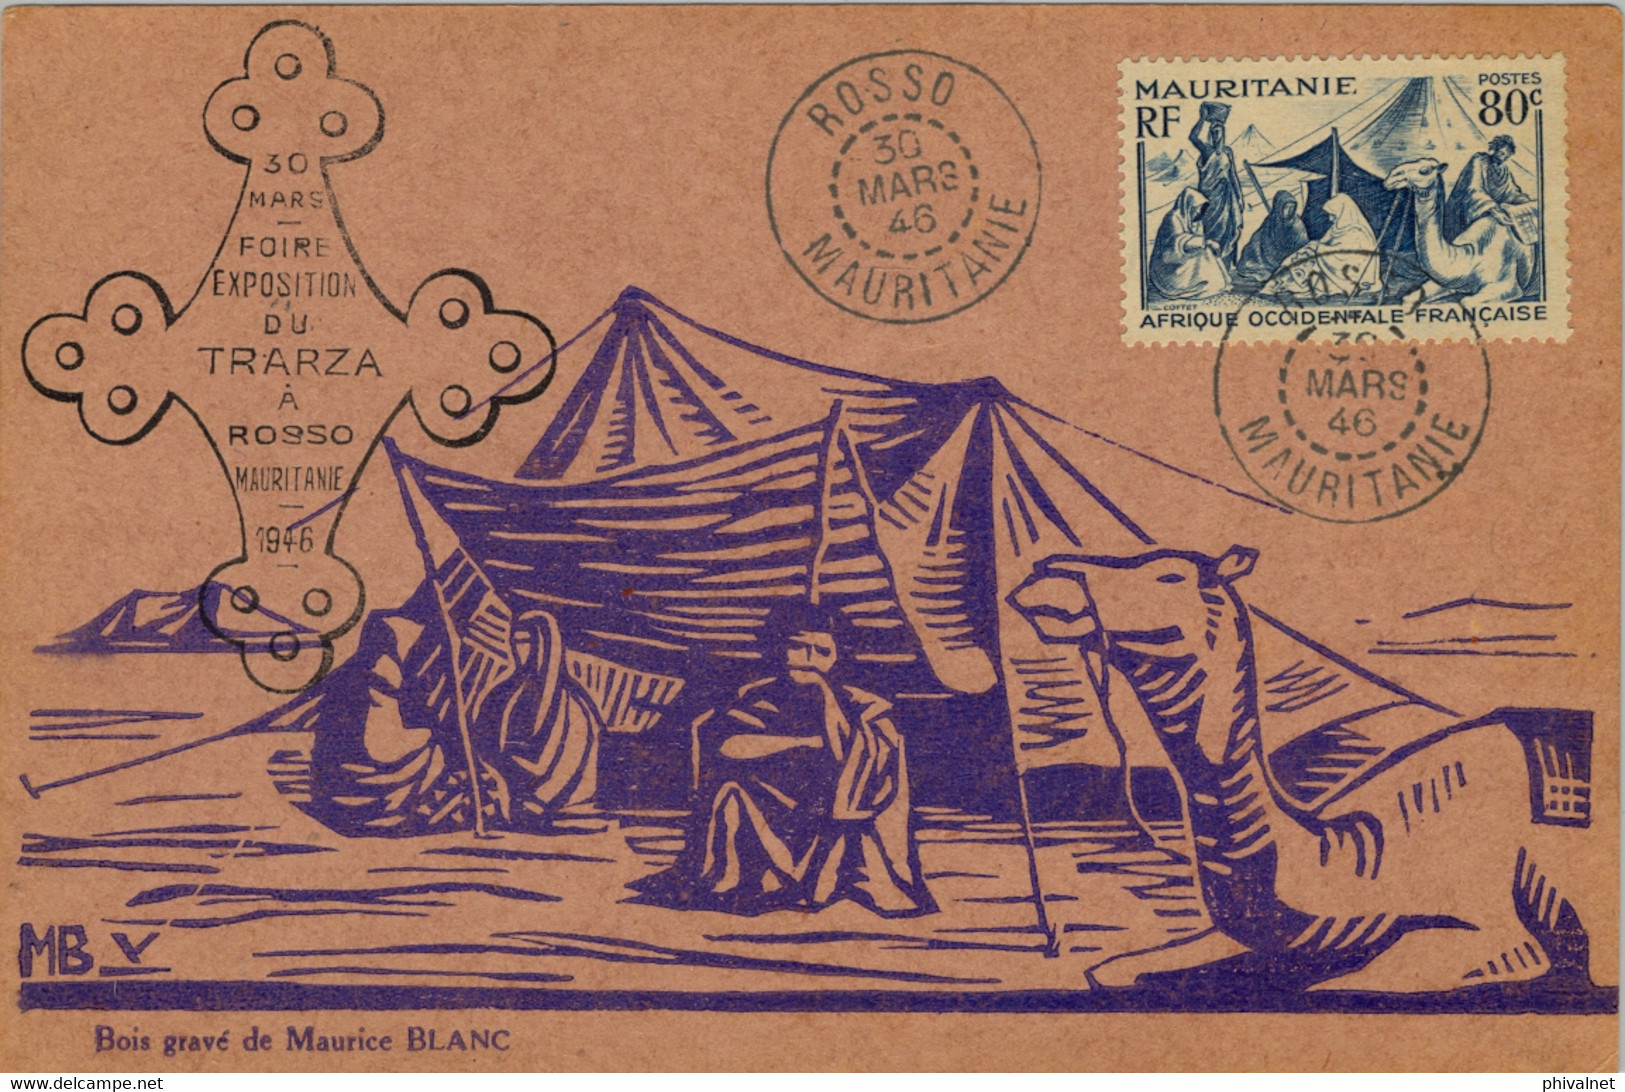 1946 MAURITANIE , FOIRE EXPOSITION DU TRARZA A ROSSO , MAT. DE ROSSO , FRANQUEO 80 CTS. - Briefe U. Dokumente